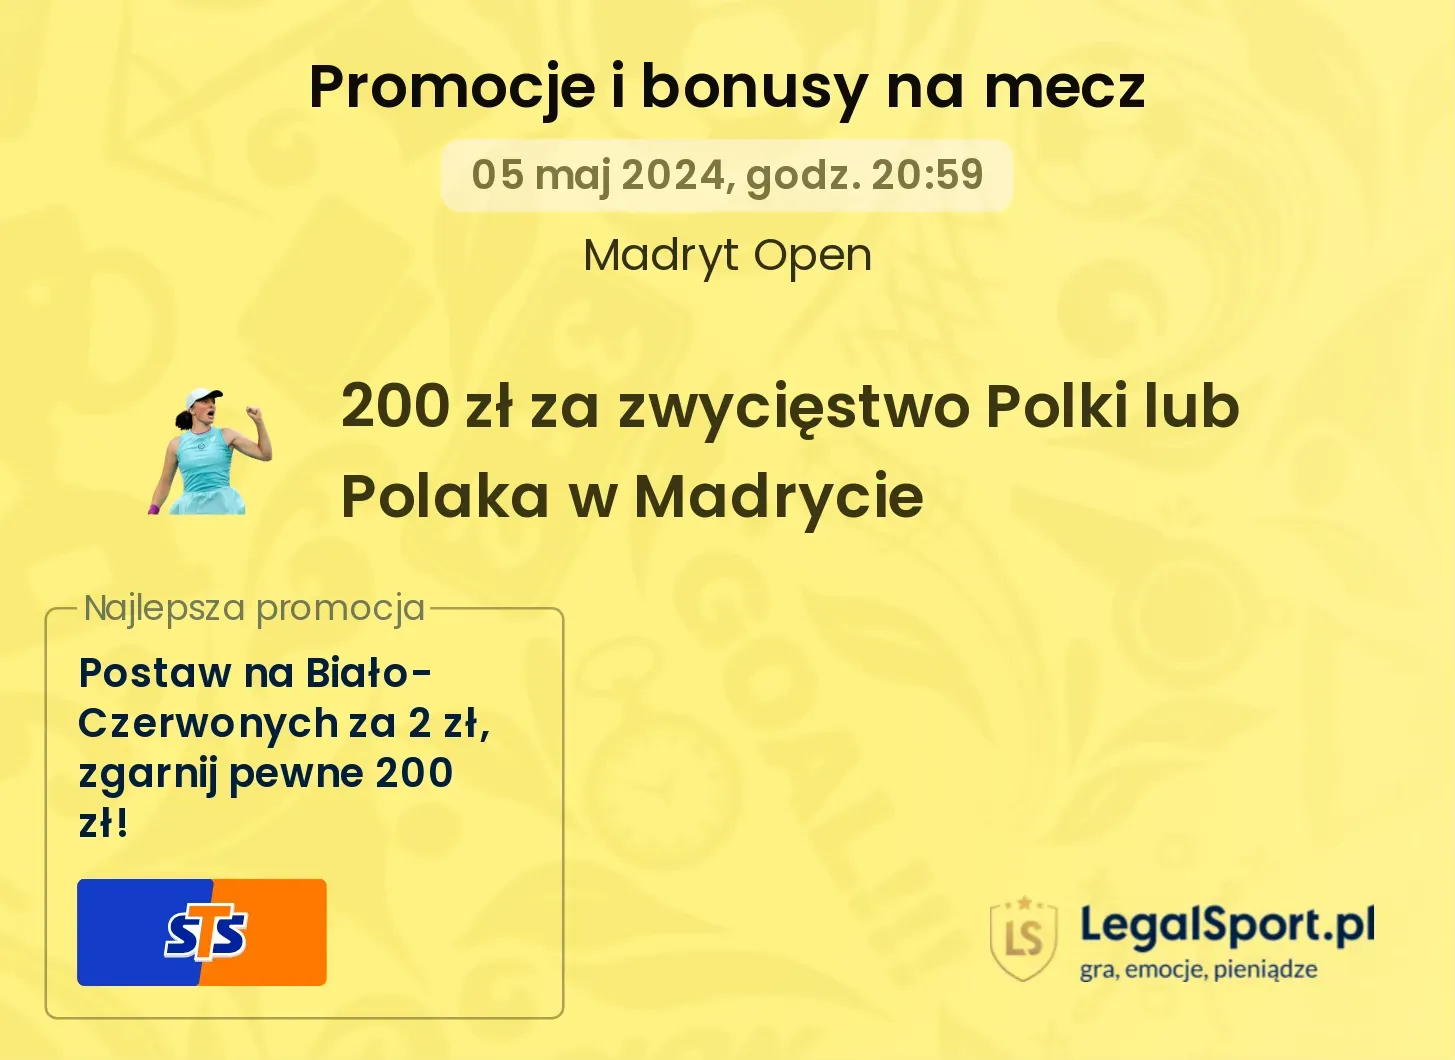 200 zł za zwycięstwo Polki lub Polaka w Madrycie promocje bonusy na mecz